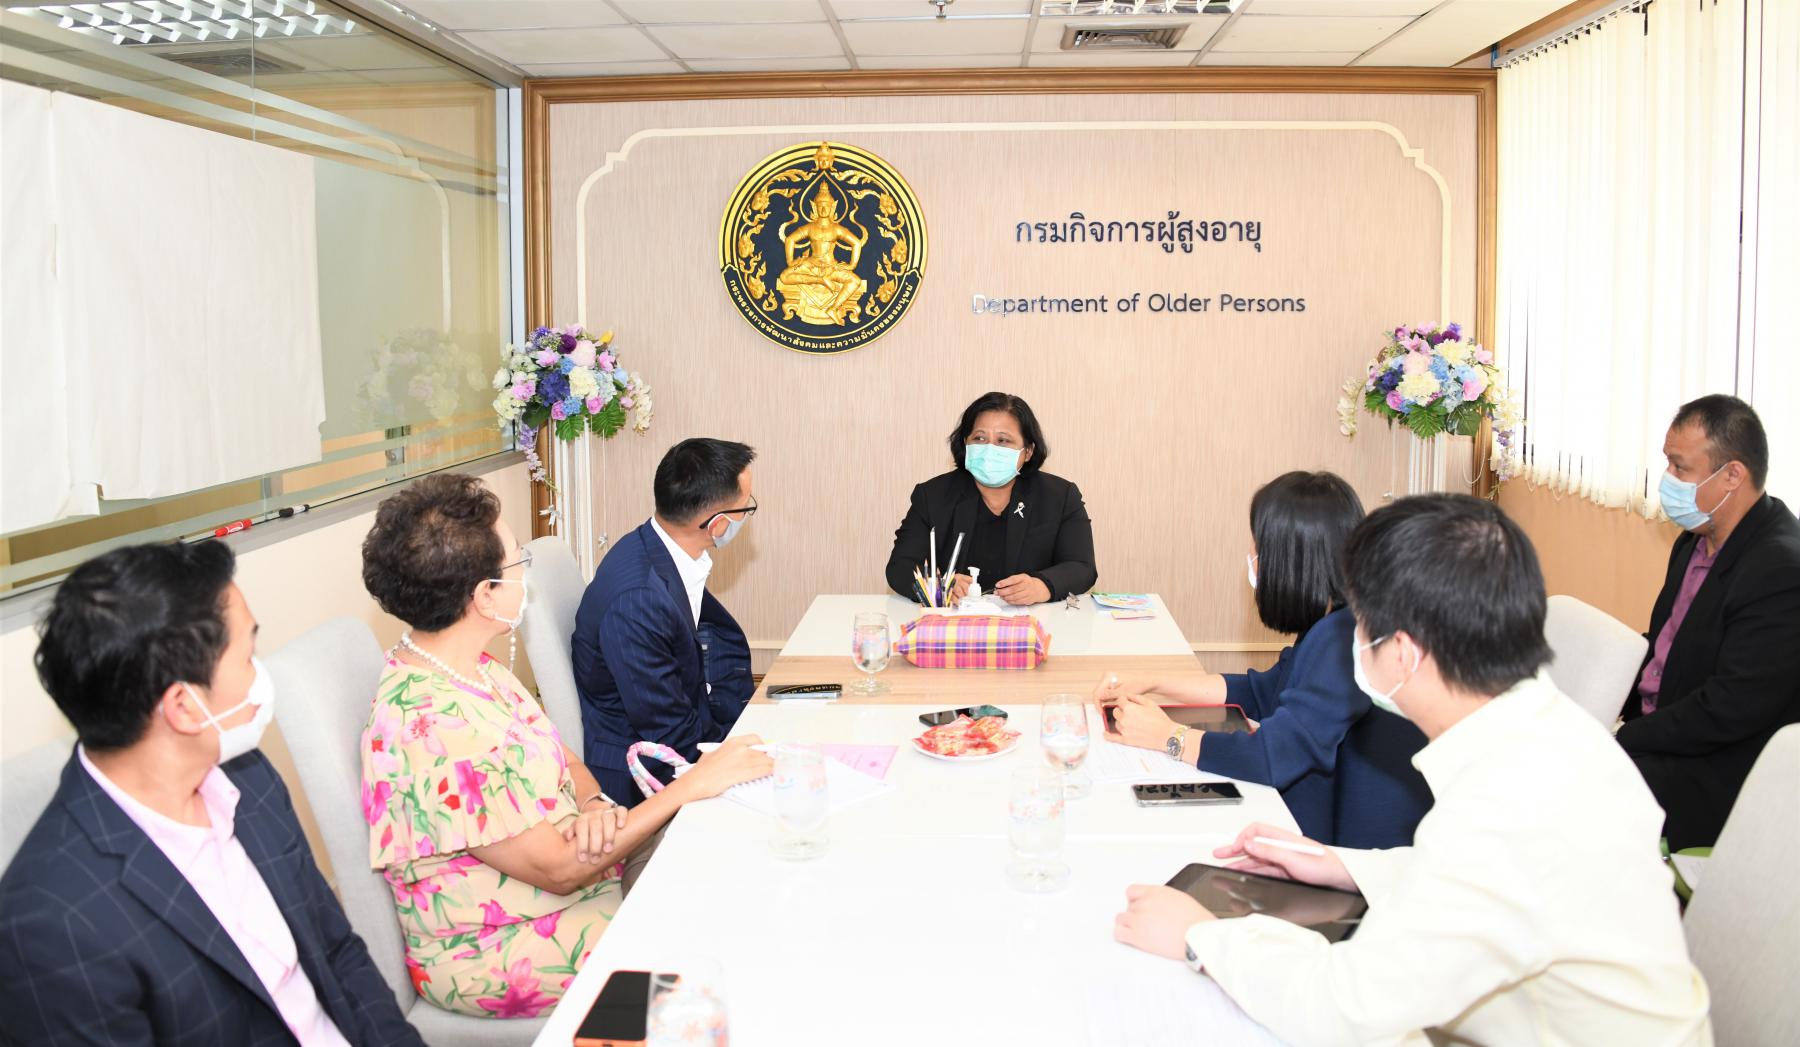 อธิบดีกรมกิจการผู้สูงอายุ ให้สัมภาษณ์ นักศึกษาหลักสูตรป้องกันราชอาณาจักร (วปอ.) รุ่นที่ 63 เรื่อง แนวทางการเตรียมความพร้อมทางการเงินของวัยแรงงานไทย เพื่อรองรับการเข้าสู่การเป็นสังคมผู้สูงอายุ